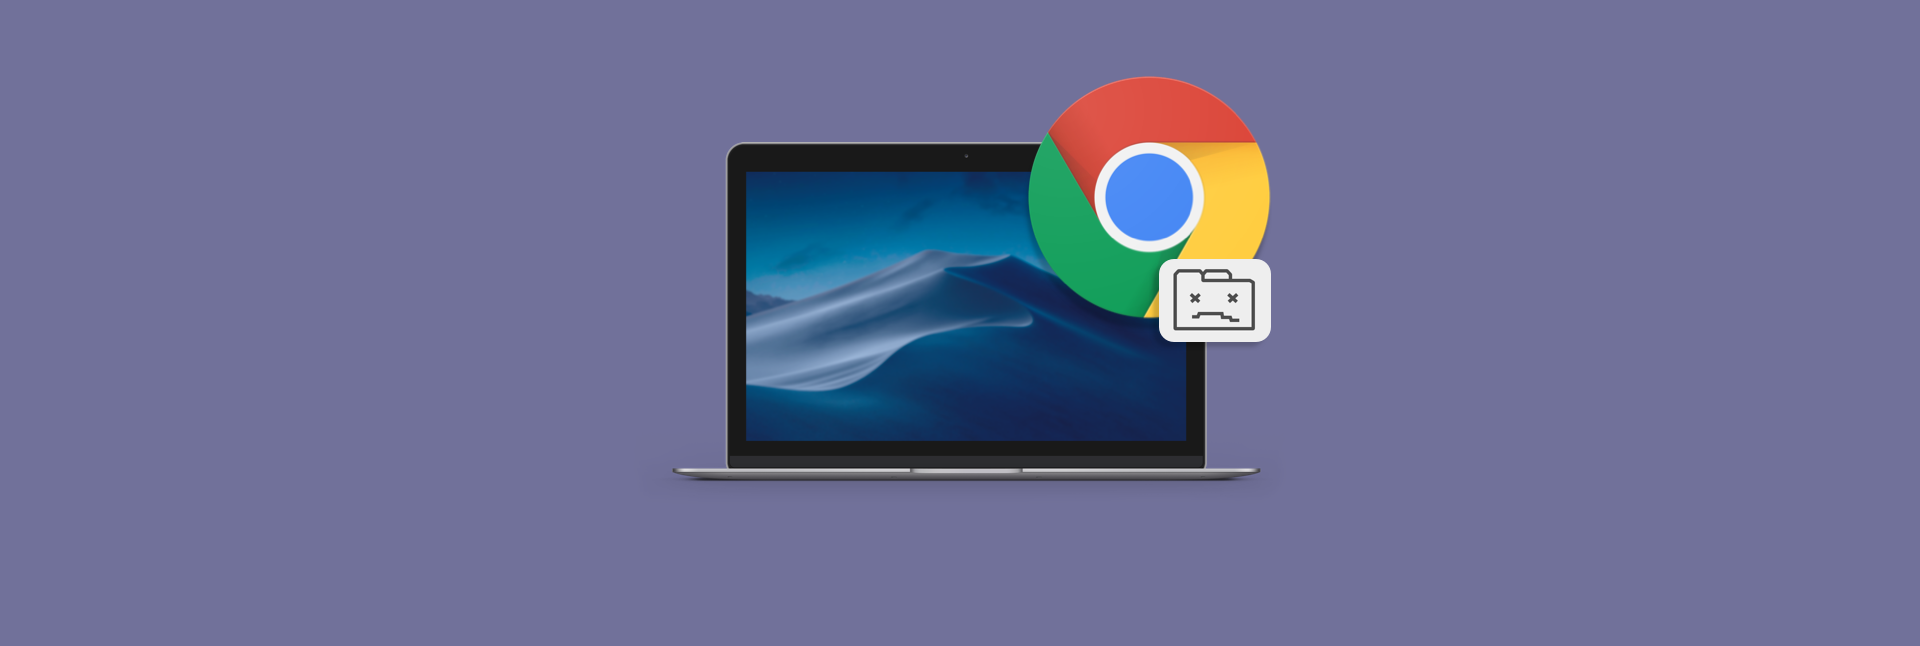 how do you get google chrome on a mac